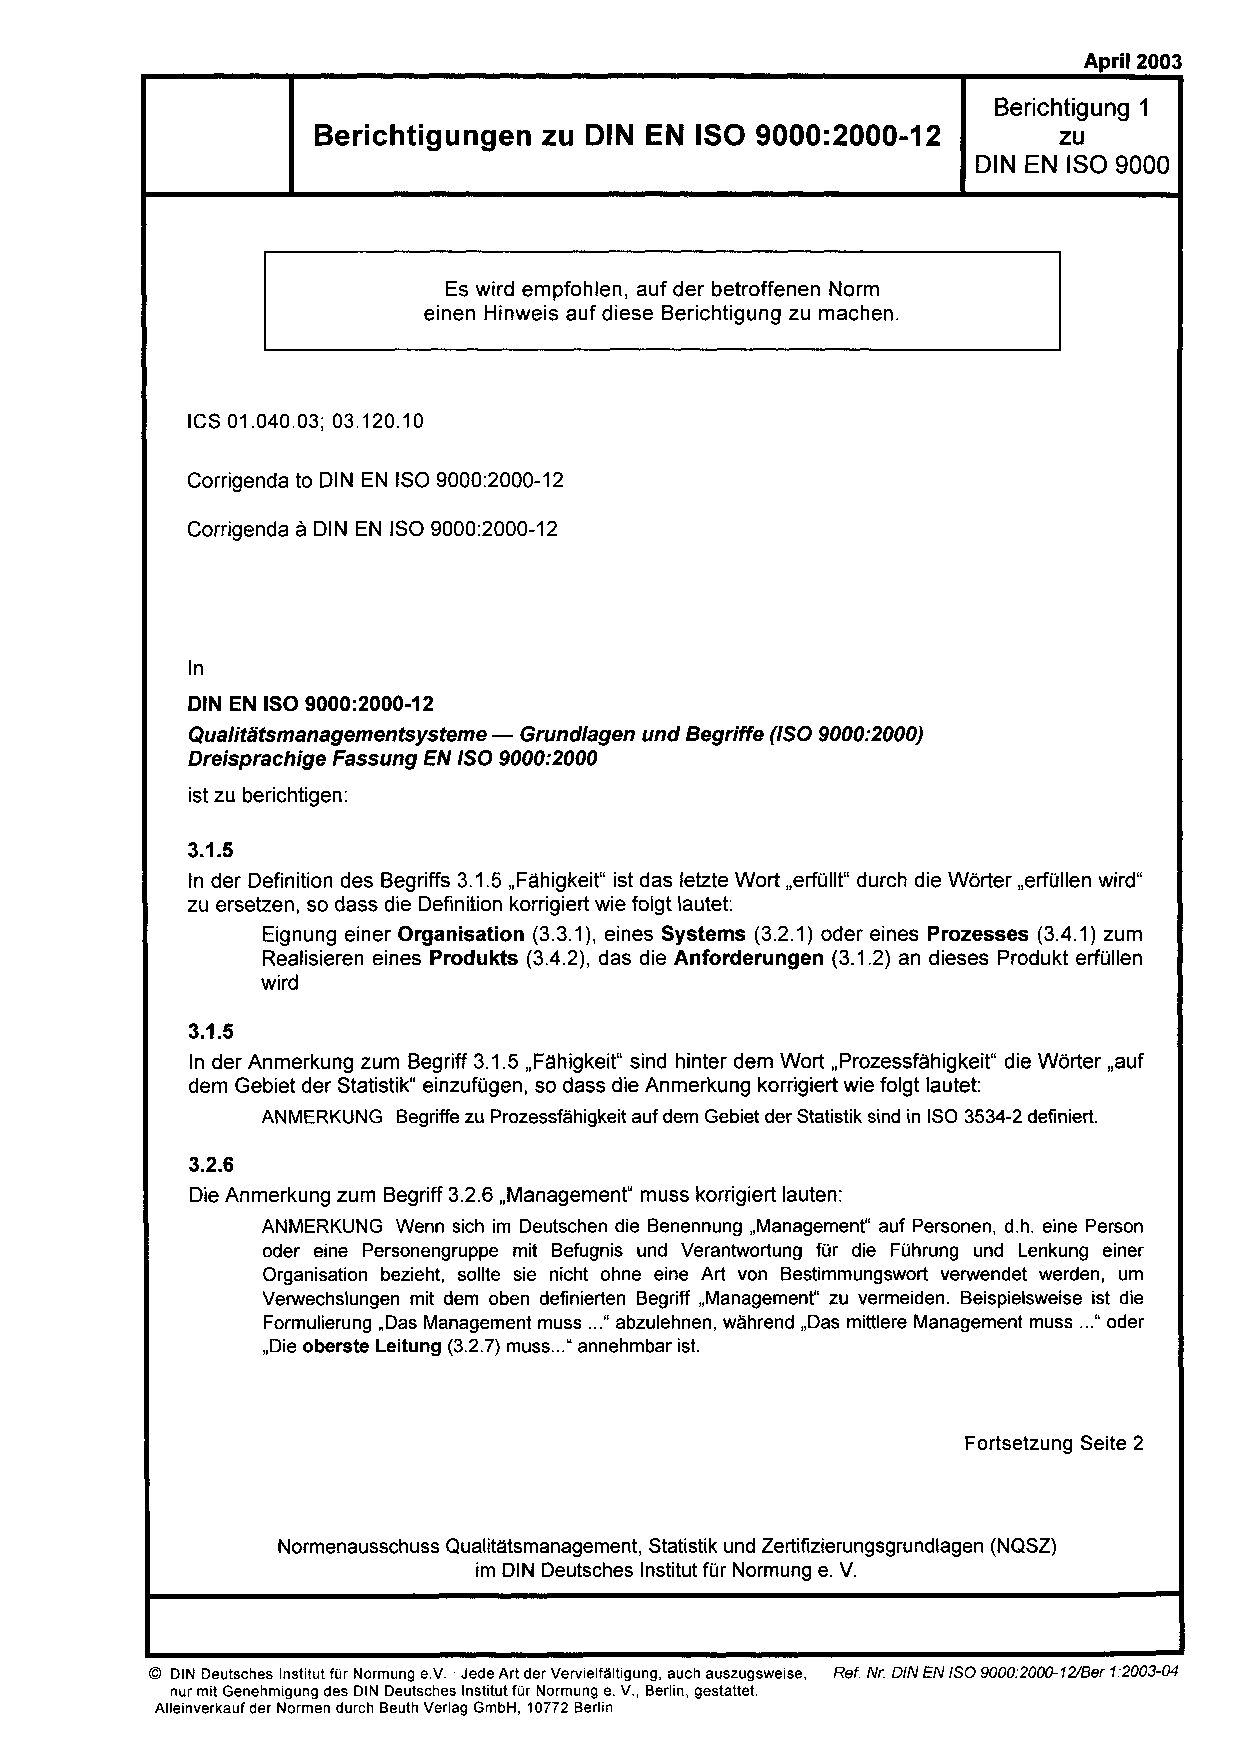 DIN EN ISO 9000 Berichtigung 1:2003